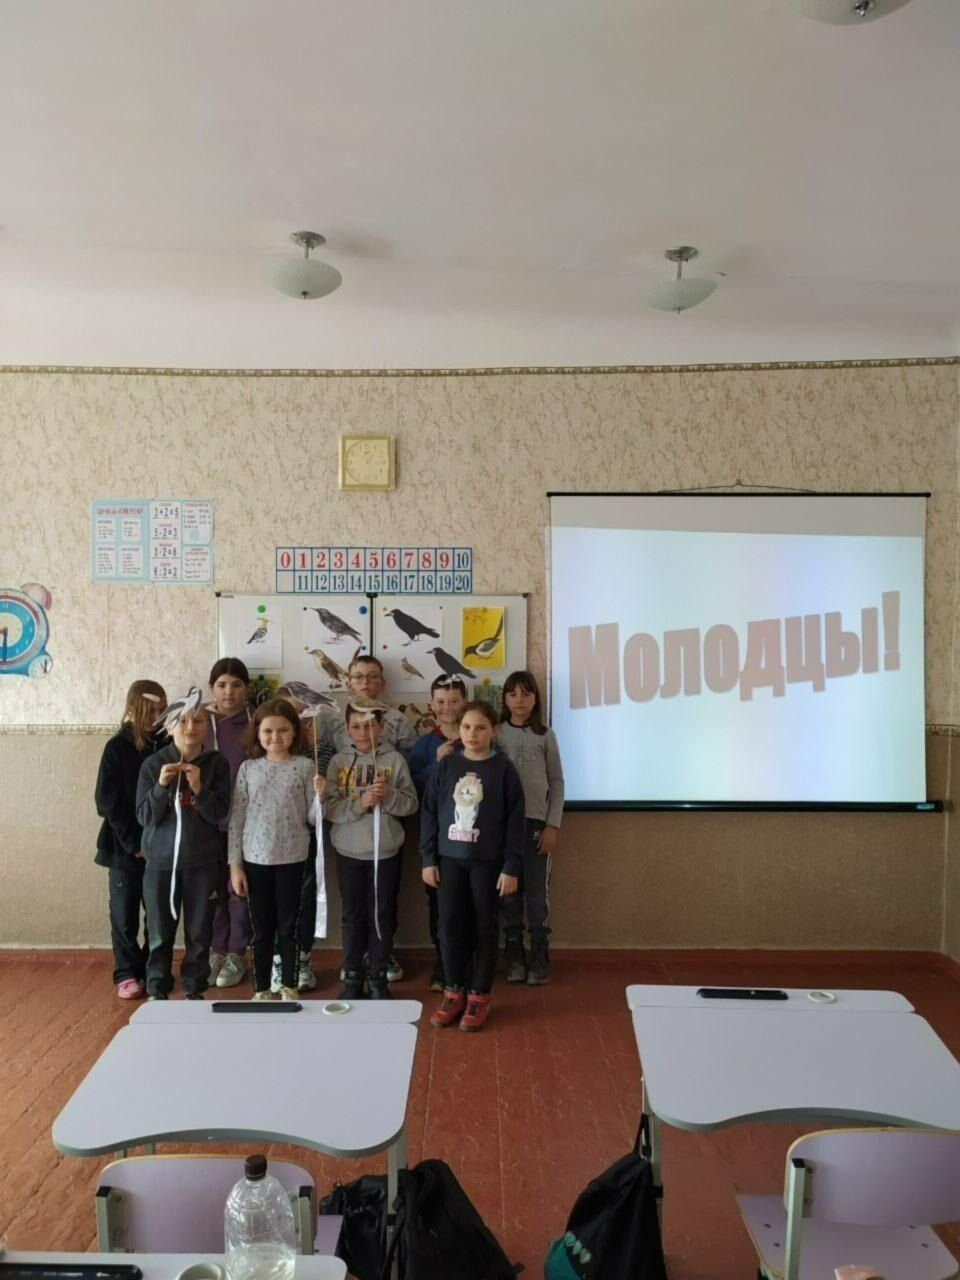 Назвали украинцев "хохлами" и сравнили с воронами: в школе на Запорожье устроили "промывание мозгов" детям. Фото